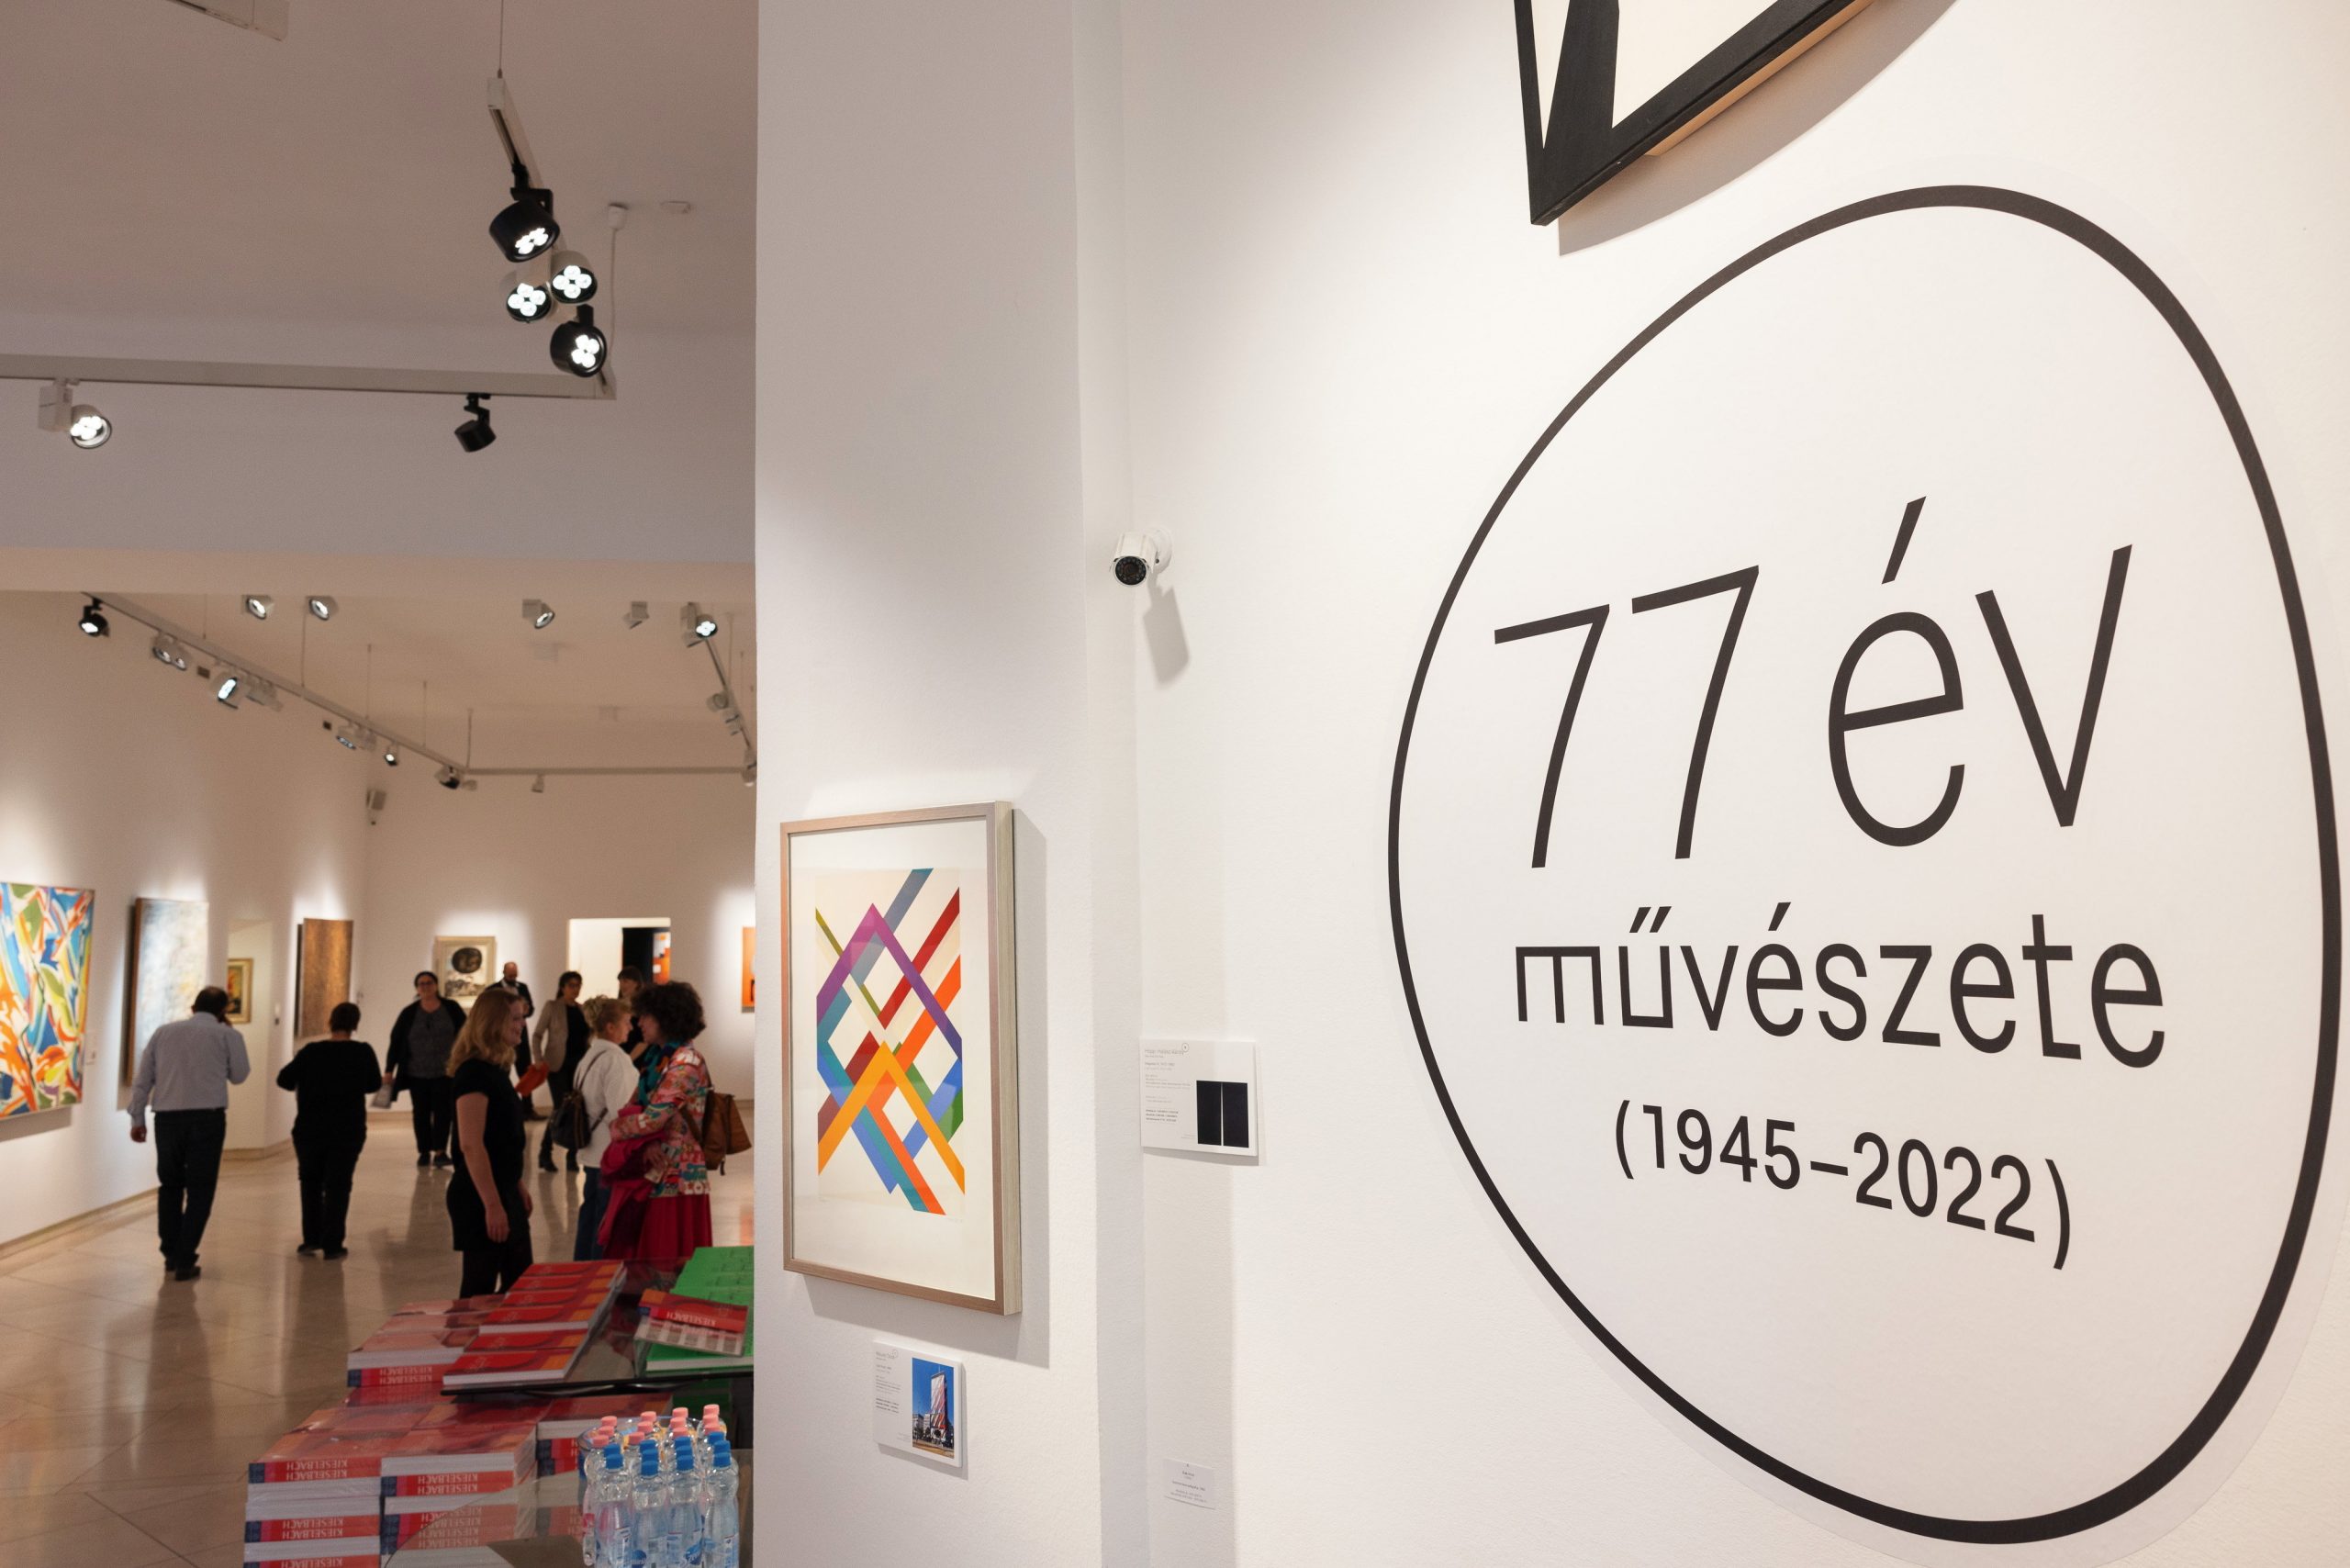 Die Galerie Kieselbach organisiert eine Auktion der Superlative